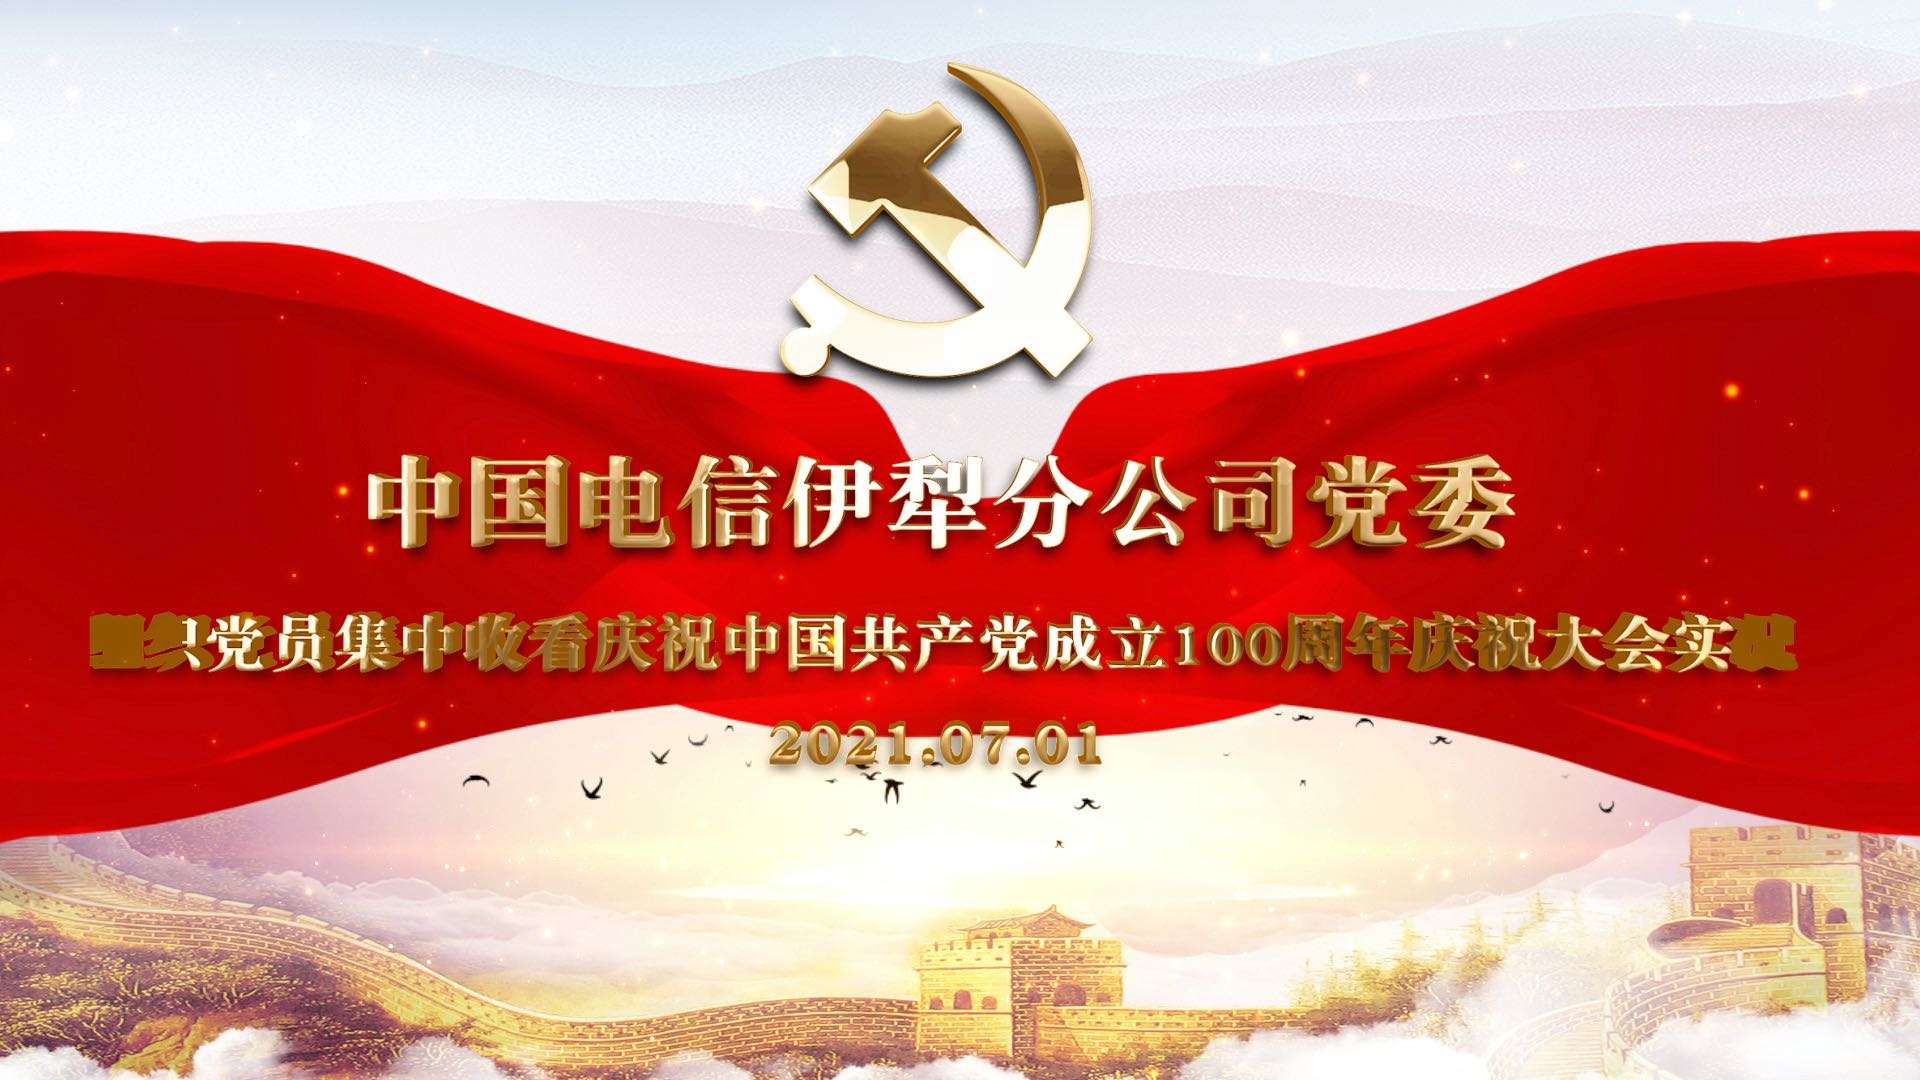 中国电信伊犁分公司党委 组织党员集中收看庆祝中国共产党成立100周年庆祝大会实况